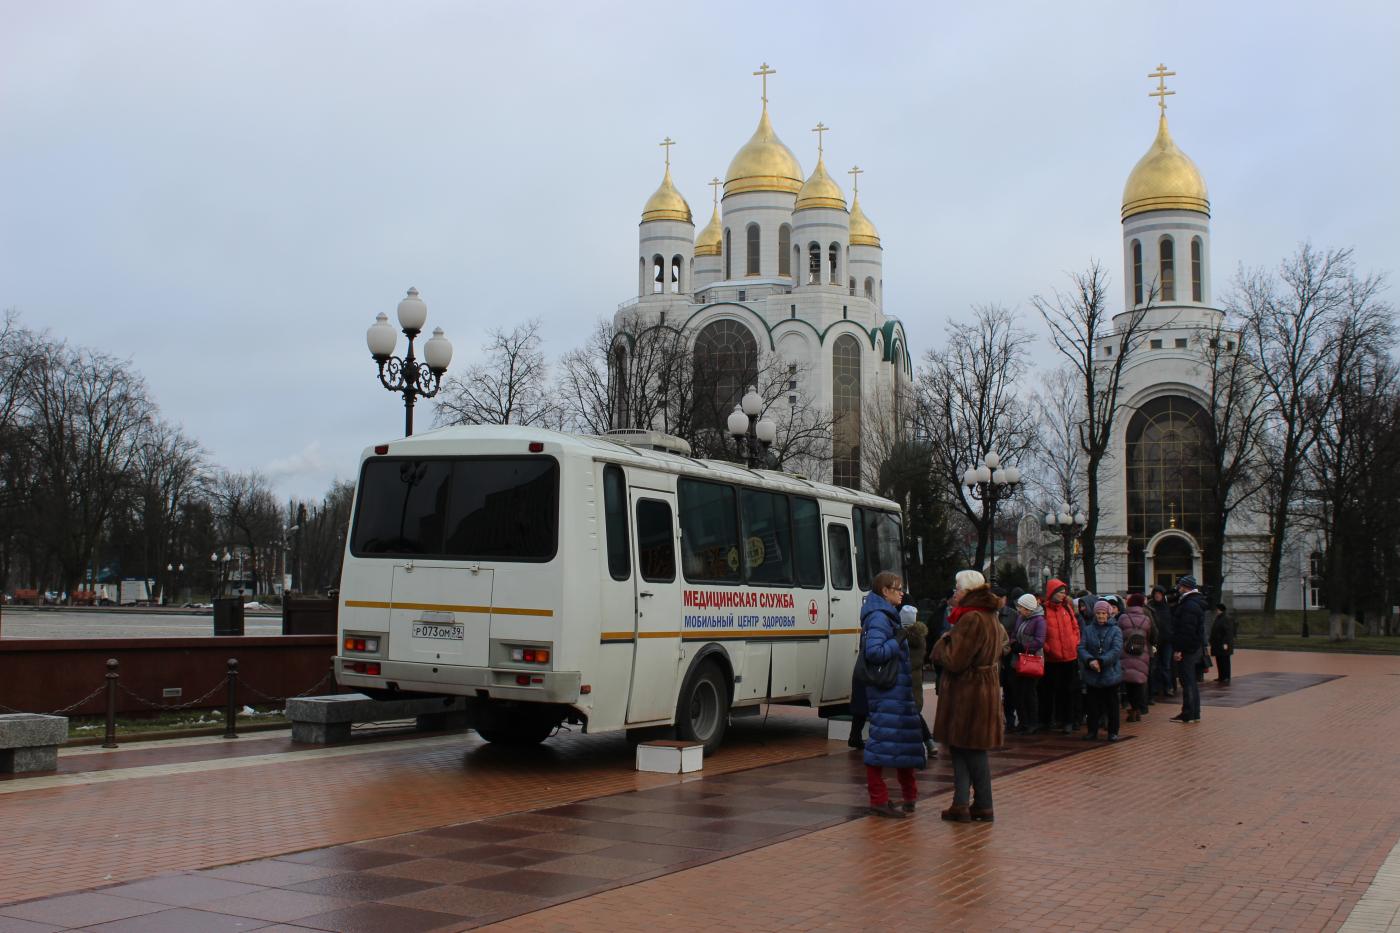 14 мая жителей Калининграда и области приглашают проверить уровень сахара в крови